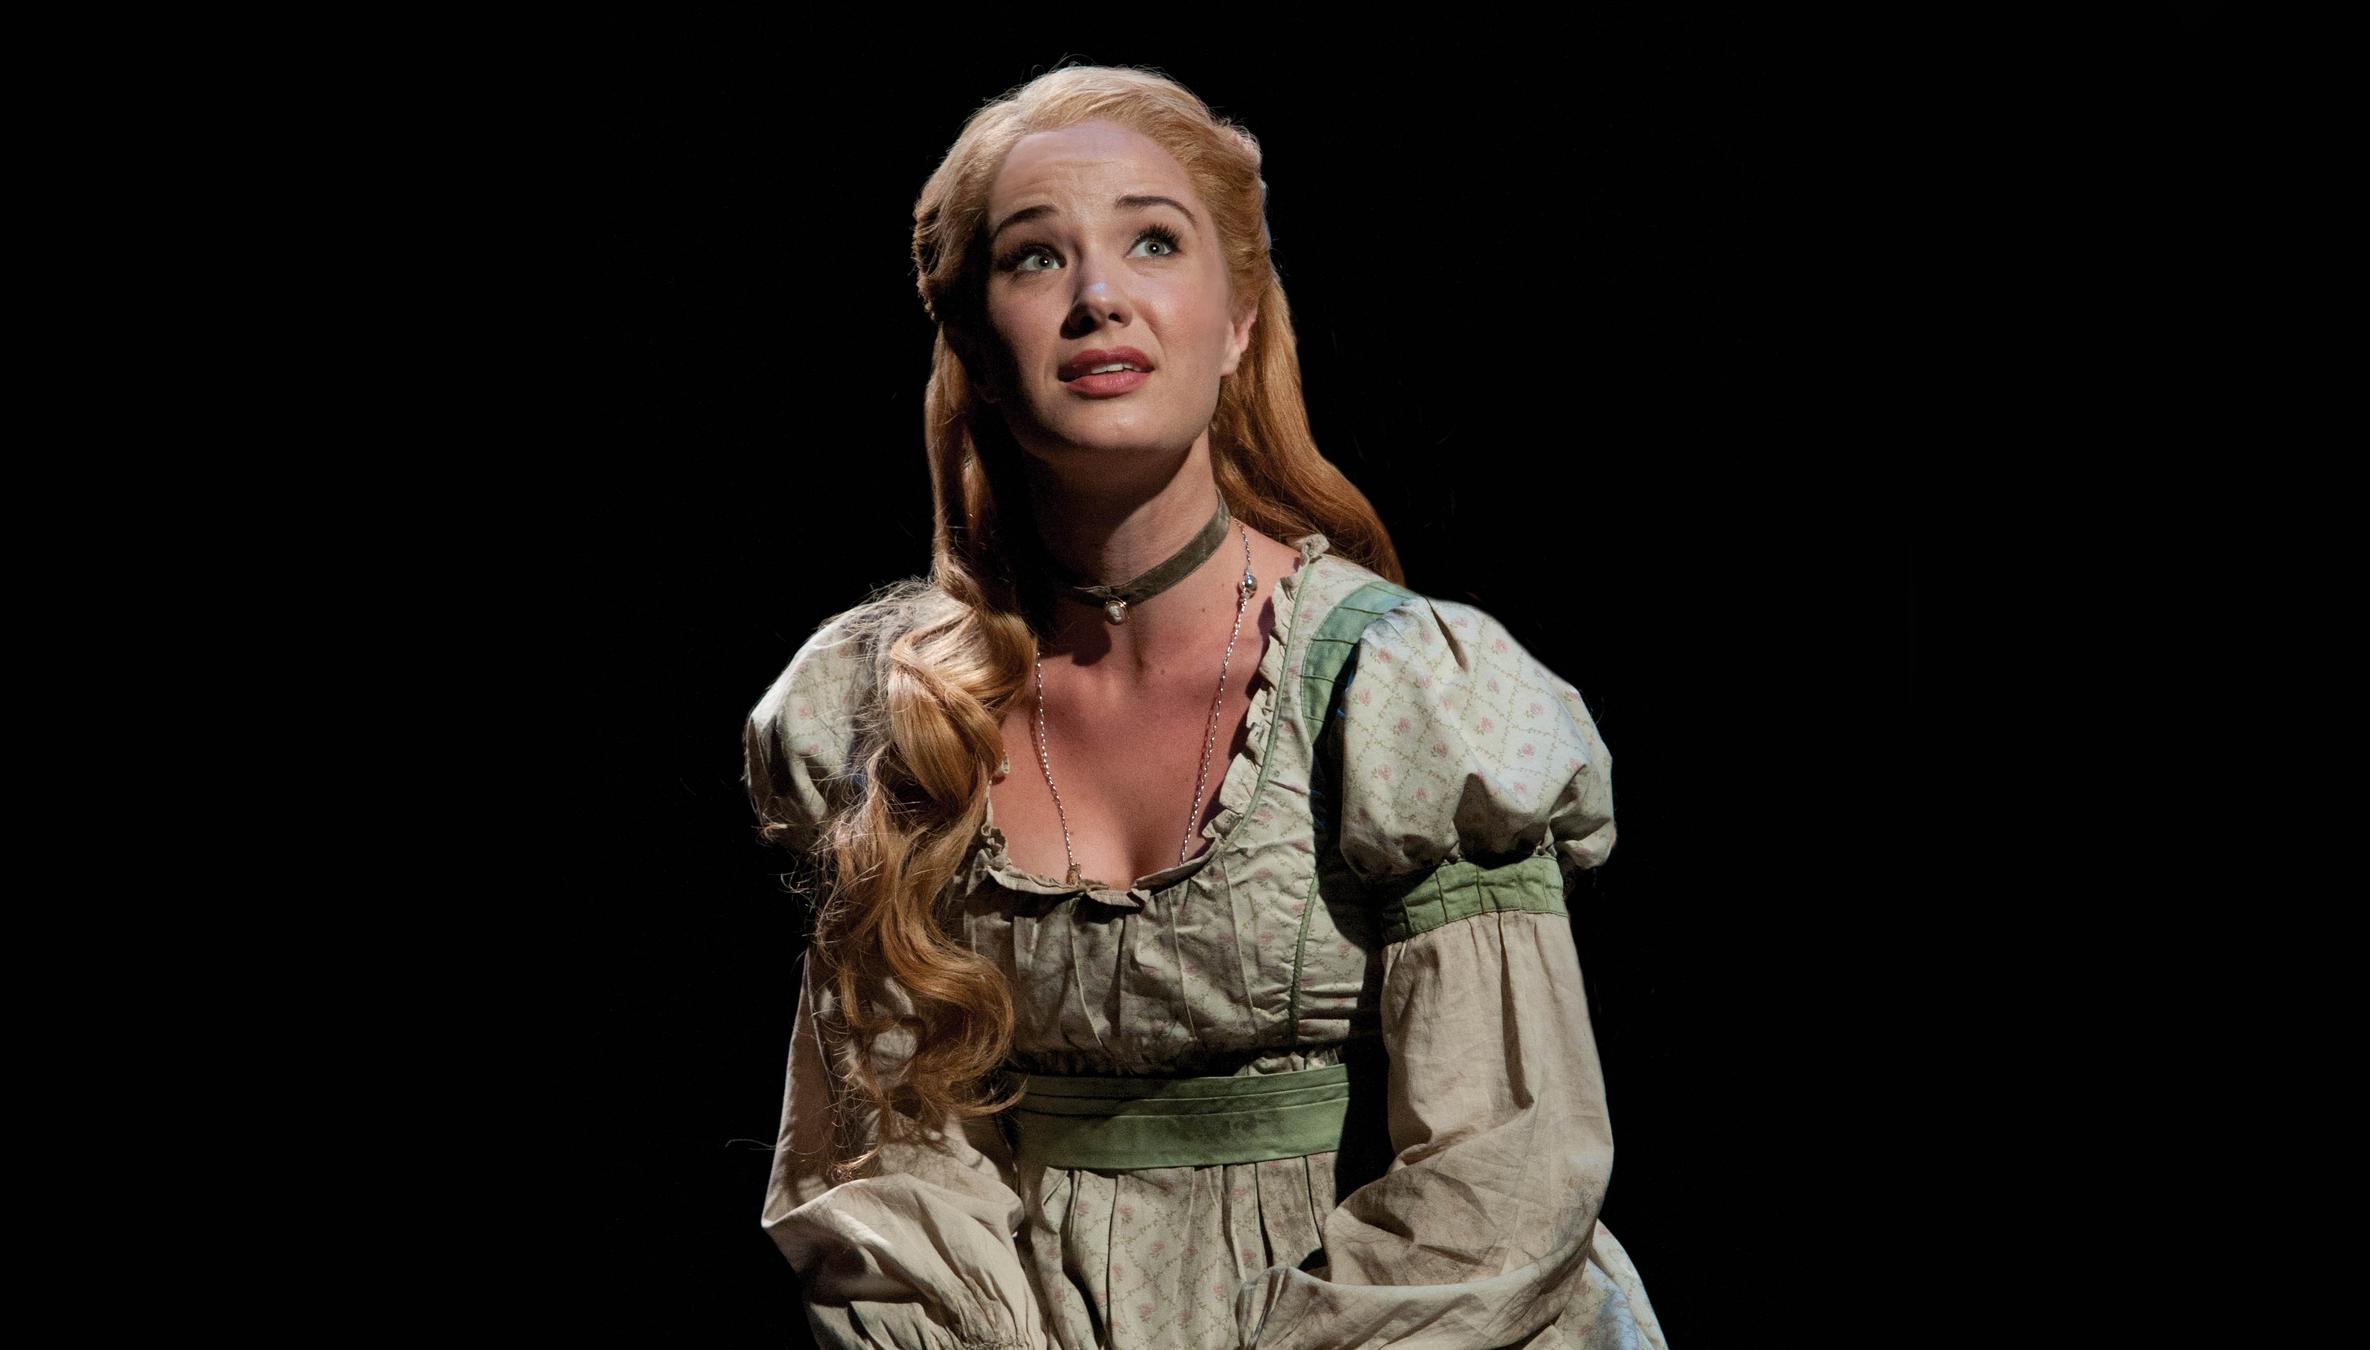 Sierra Boggess Returns To London As Fantine In ‘les Misérables